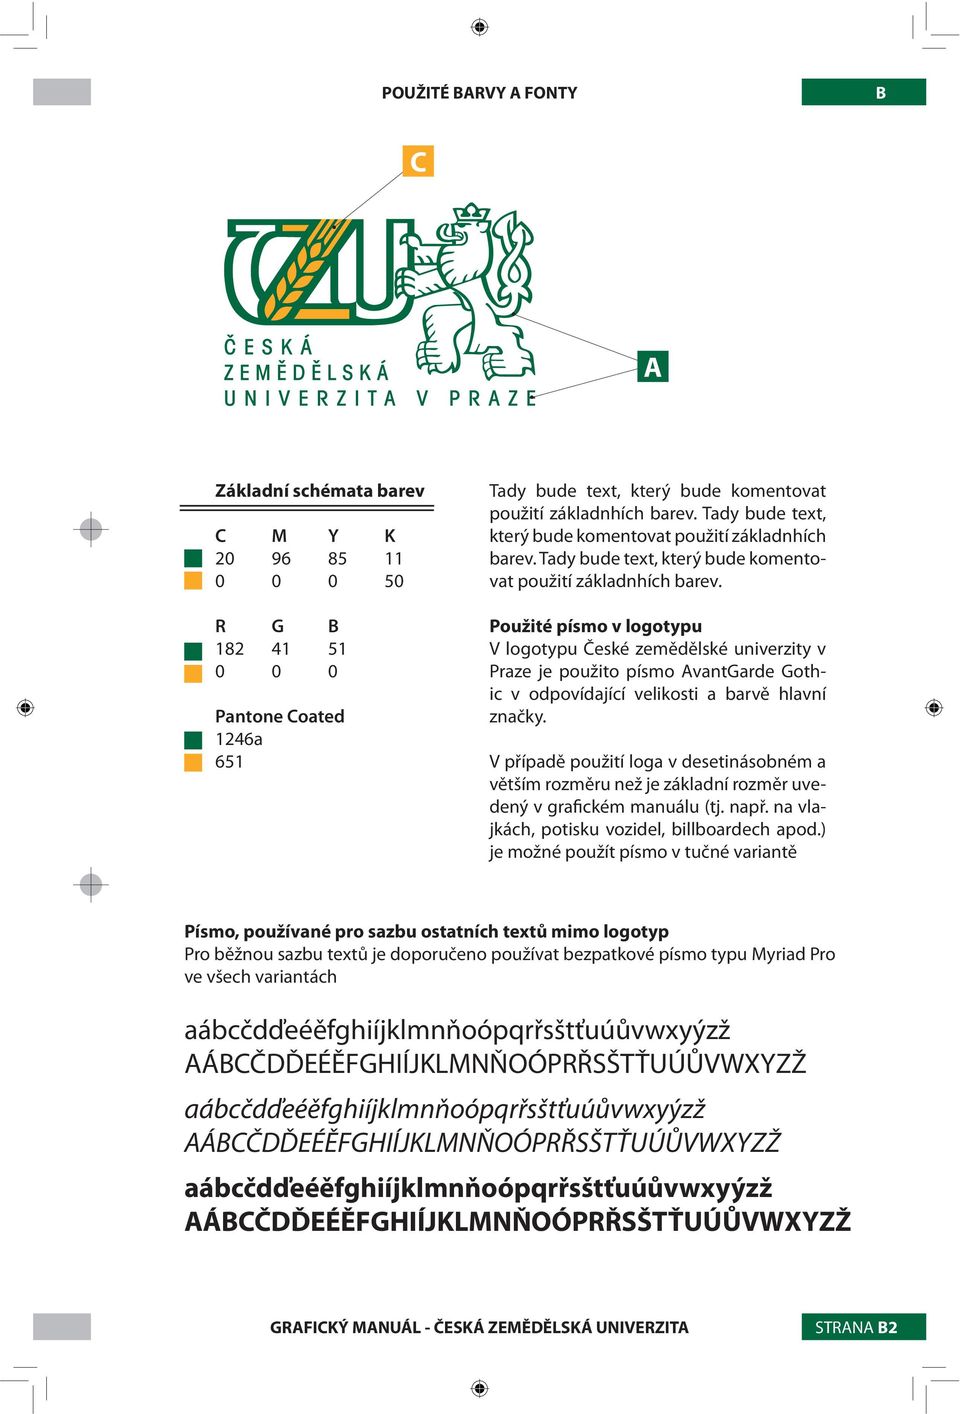 Použité písmo v logotypu V logotypu České zemědělské univerzity v Praze je použito písmo AvantGarde Gothic v odpovídající velikosti a barvě hlavní značky.